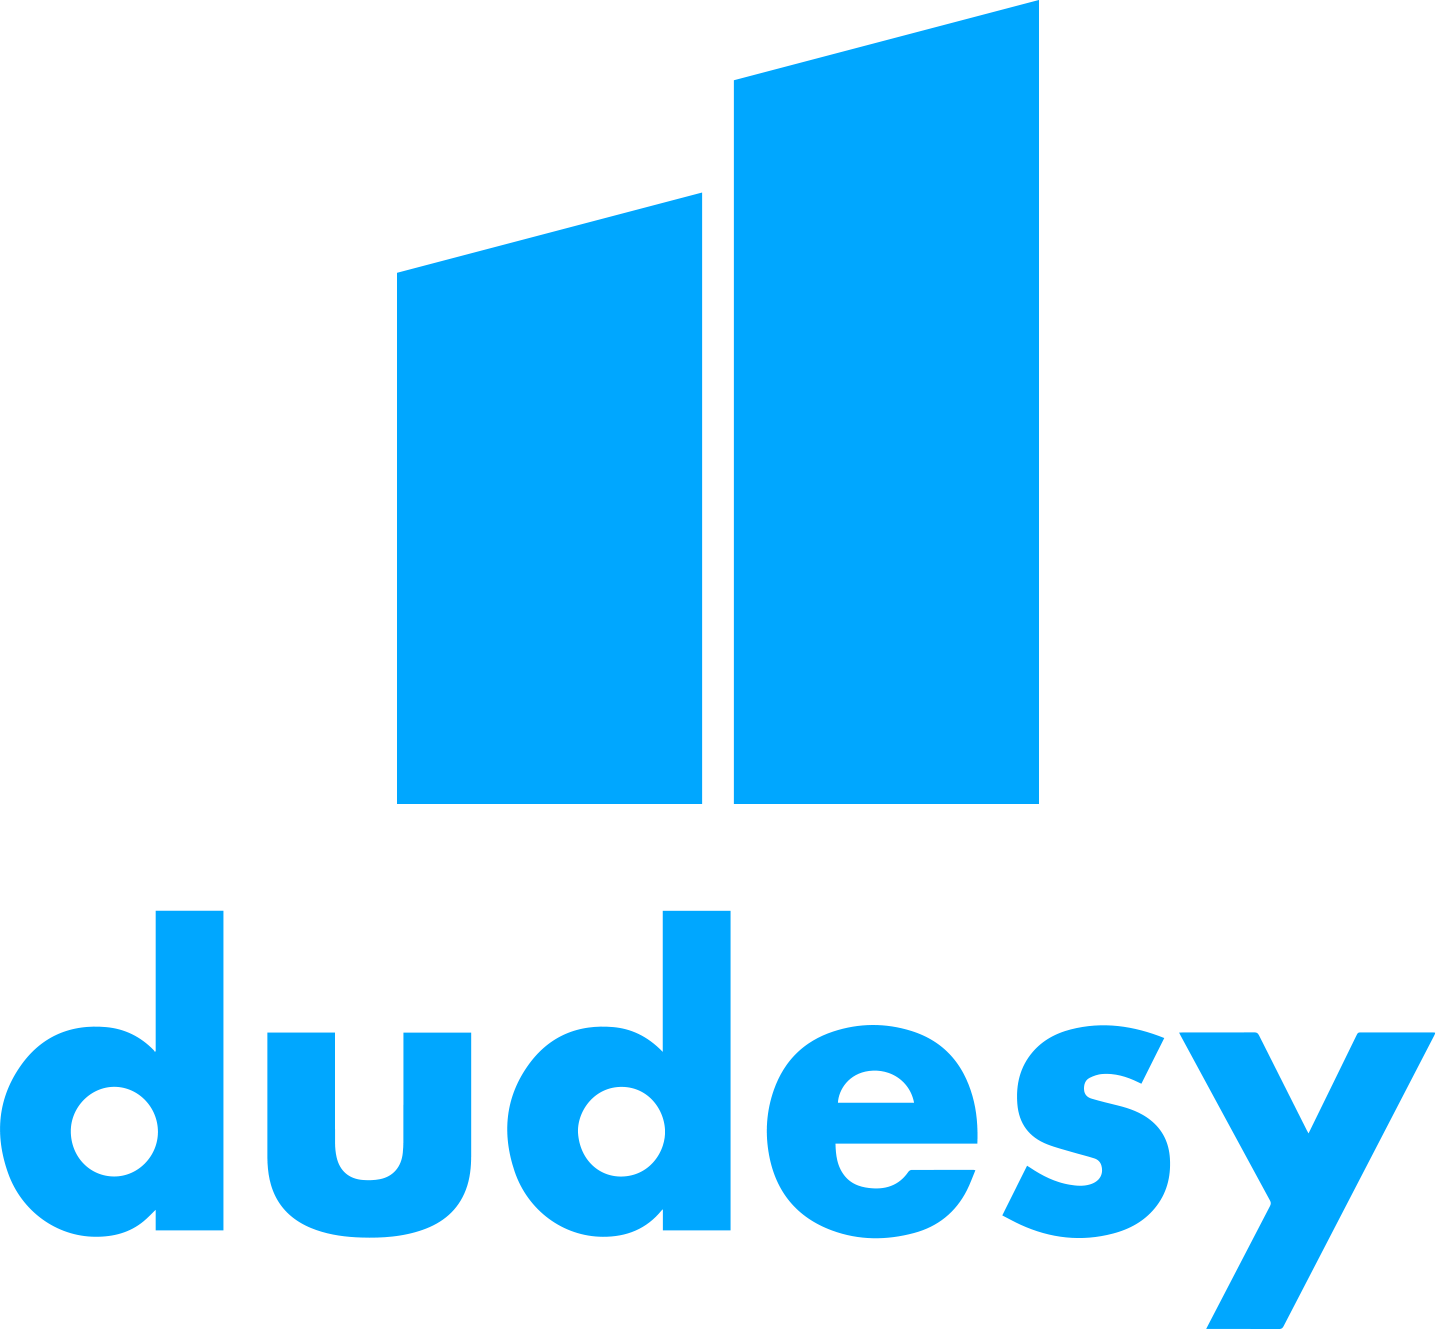 Dudesy